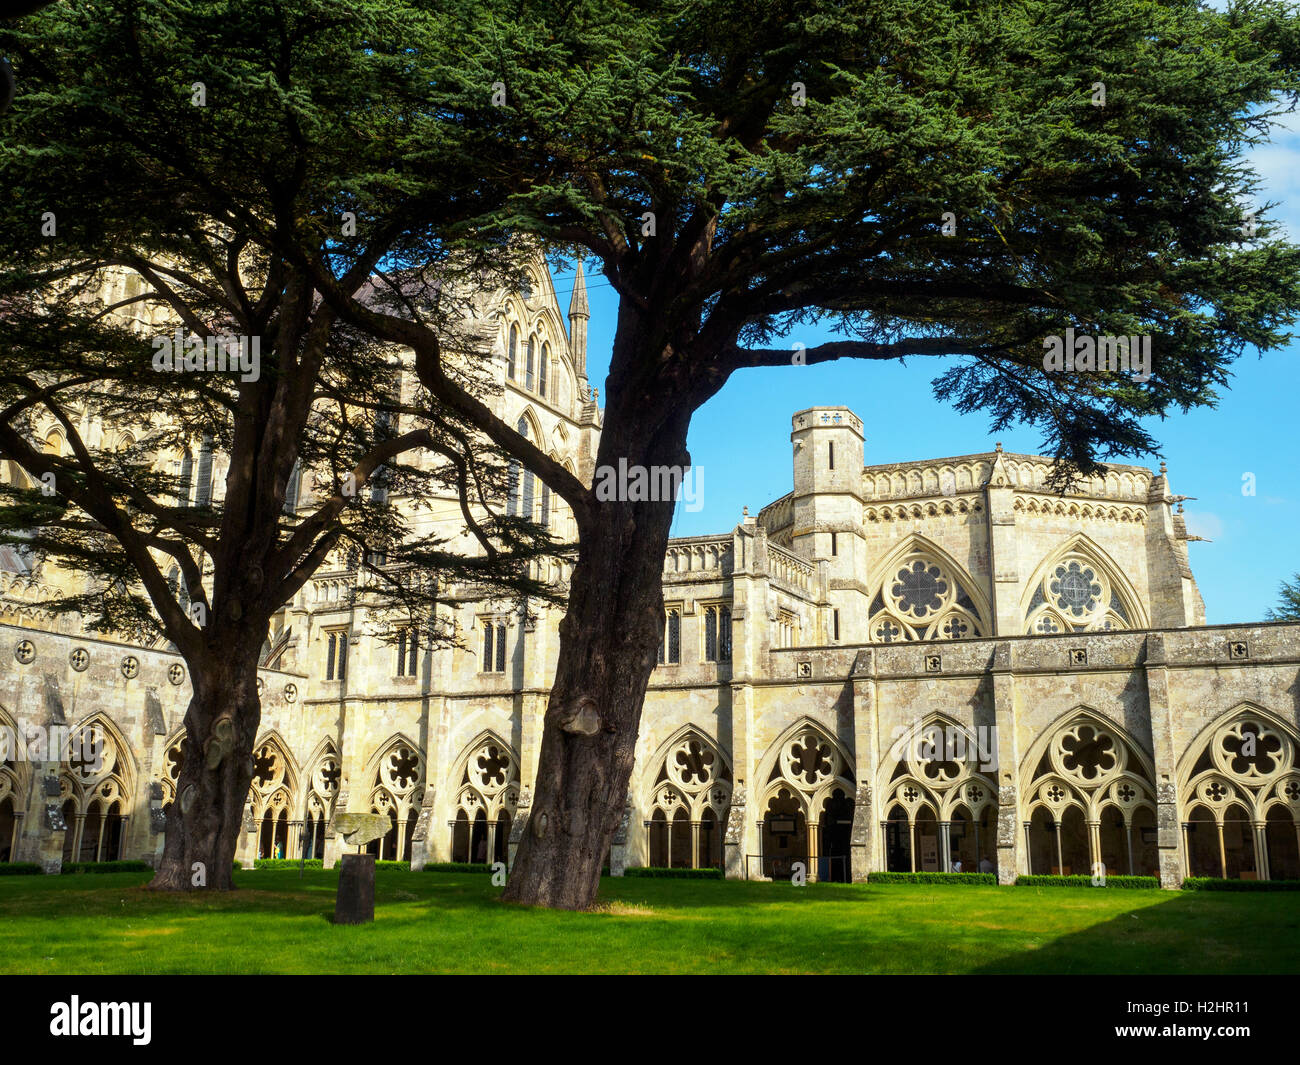 Kathedrale von Salisbury oder Kathedrale der Heiligen Jungfrau Maria - Wiltshire, England Stockfoto